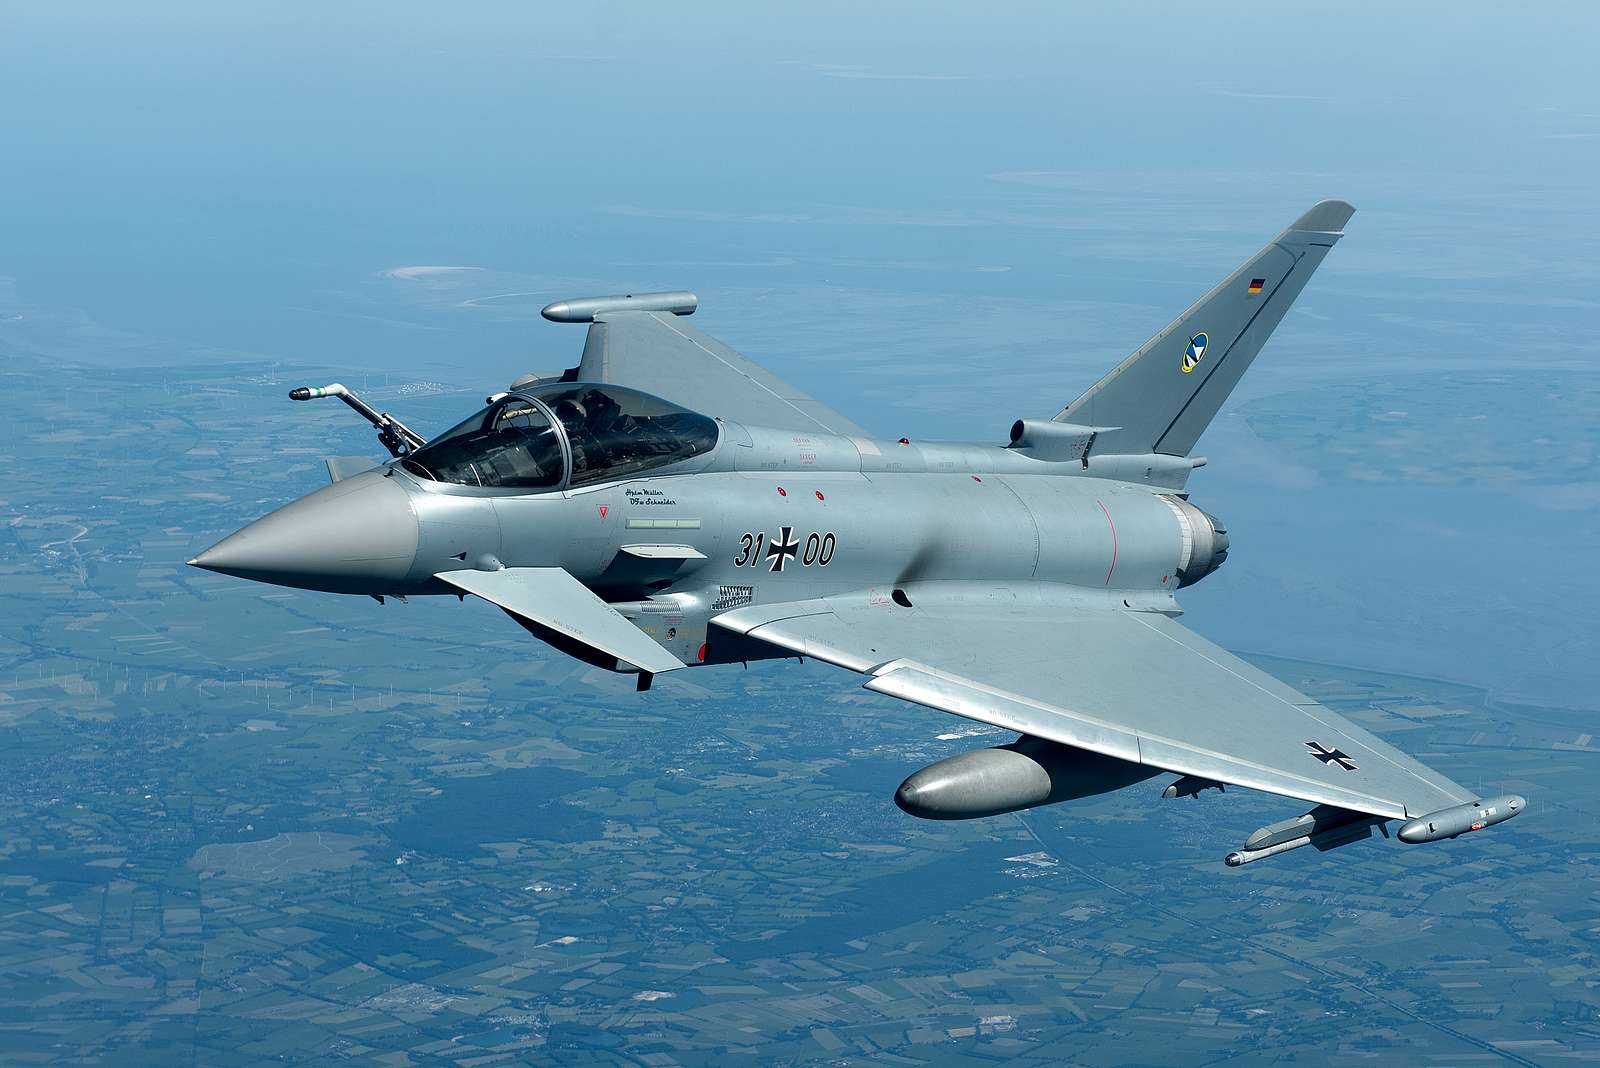 Niemcy wzbiły się w powietrze dwa myśliwce wielozadaniowe Eurofighter Typhoon w celu przechwycenia rosyjskich samolotów MiG-31, Su-27 i Ił-62M